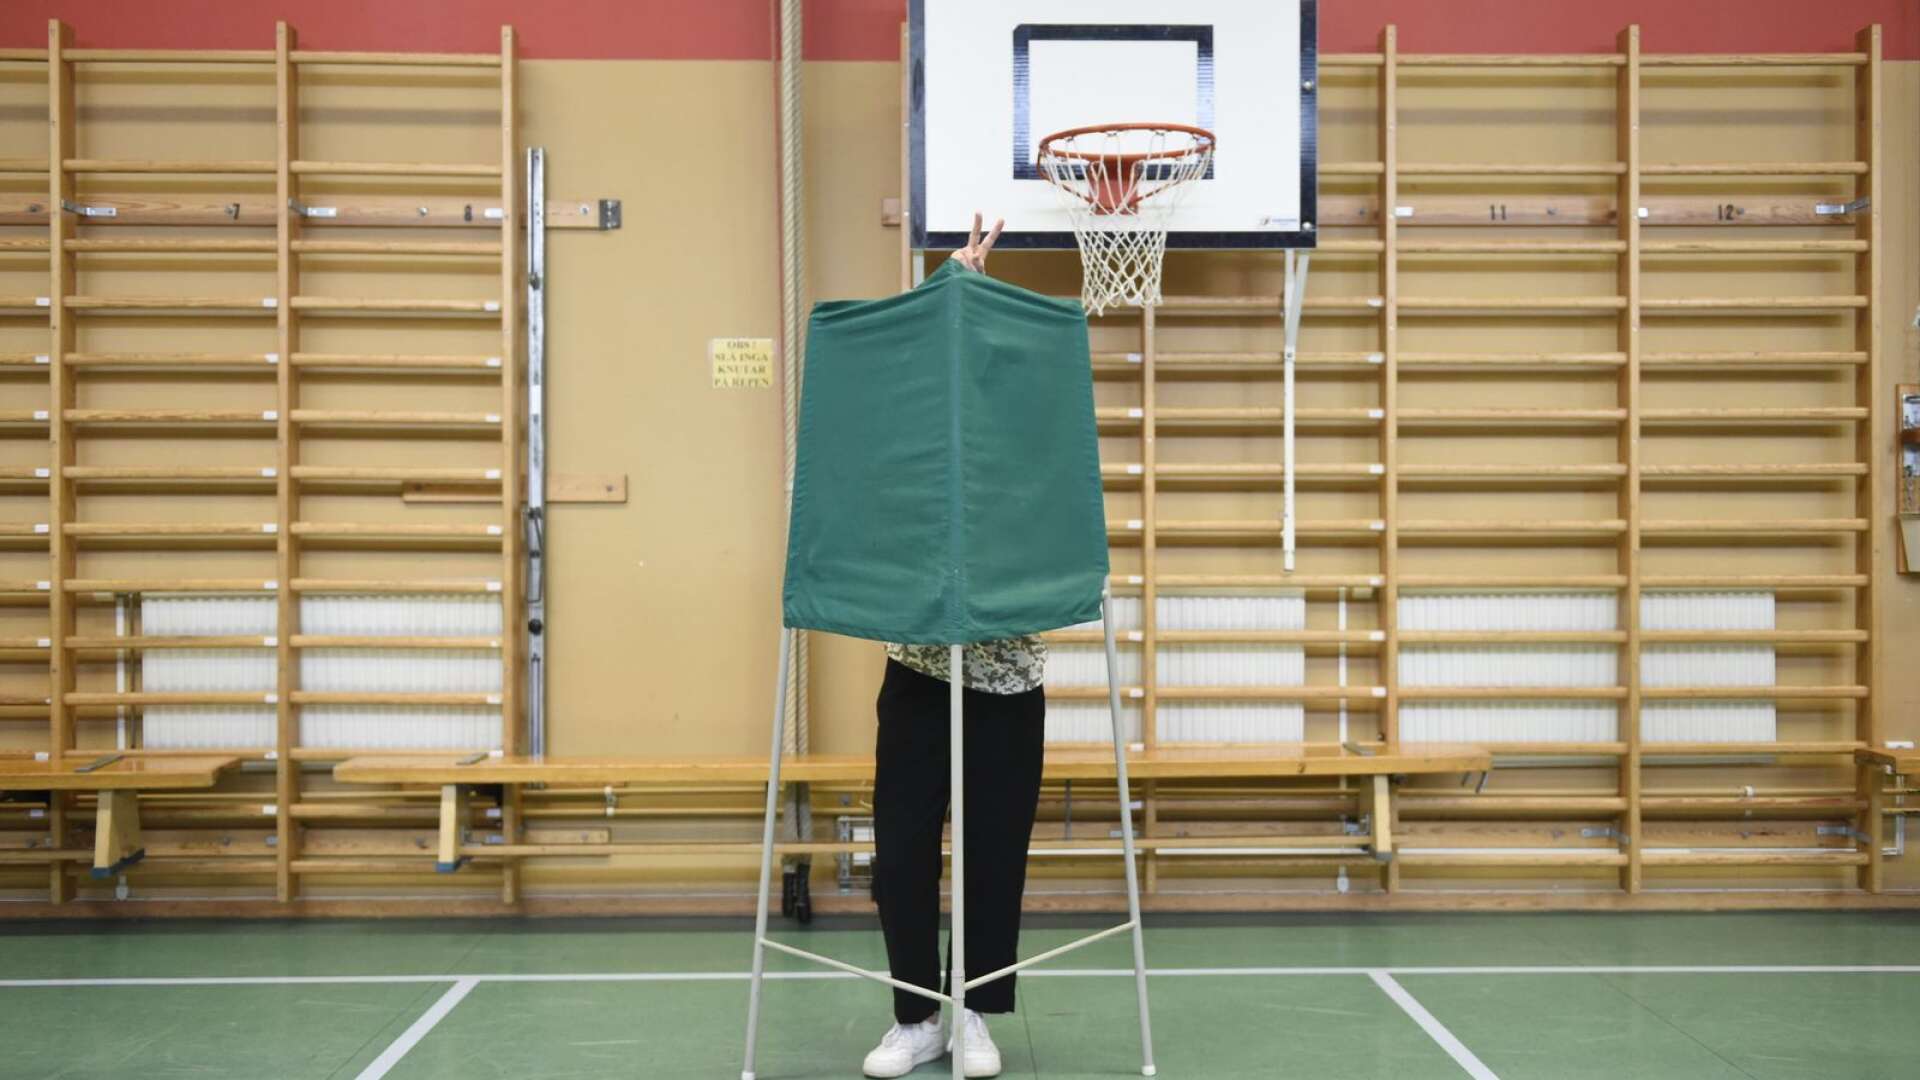 Om rösträttsåldern sänks till 16 år hinner fler rösta medan de fortfarande går i skolan och då kan rösträtten och att rösta bli ett viktigt pedagogiskt inslag i undervisningen, skriver Anders Andersson.